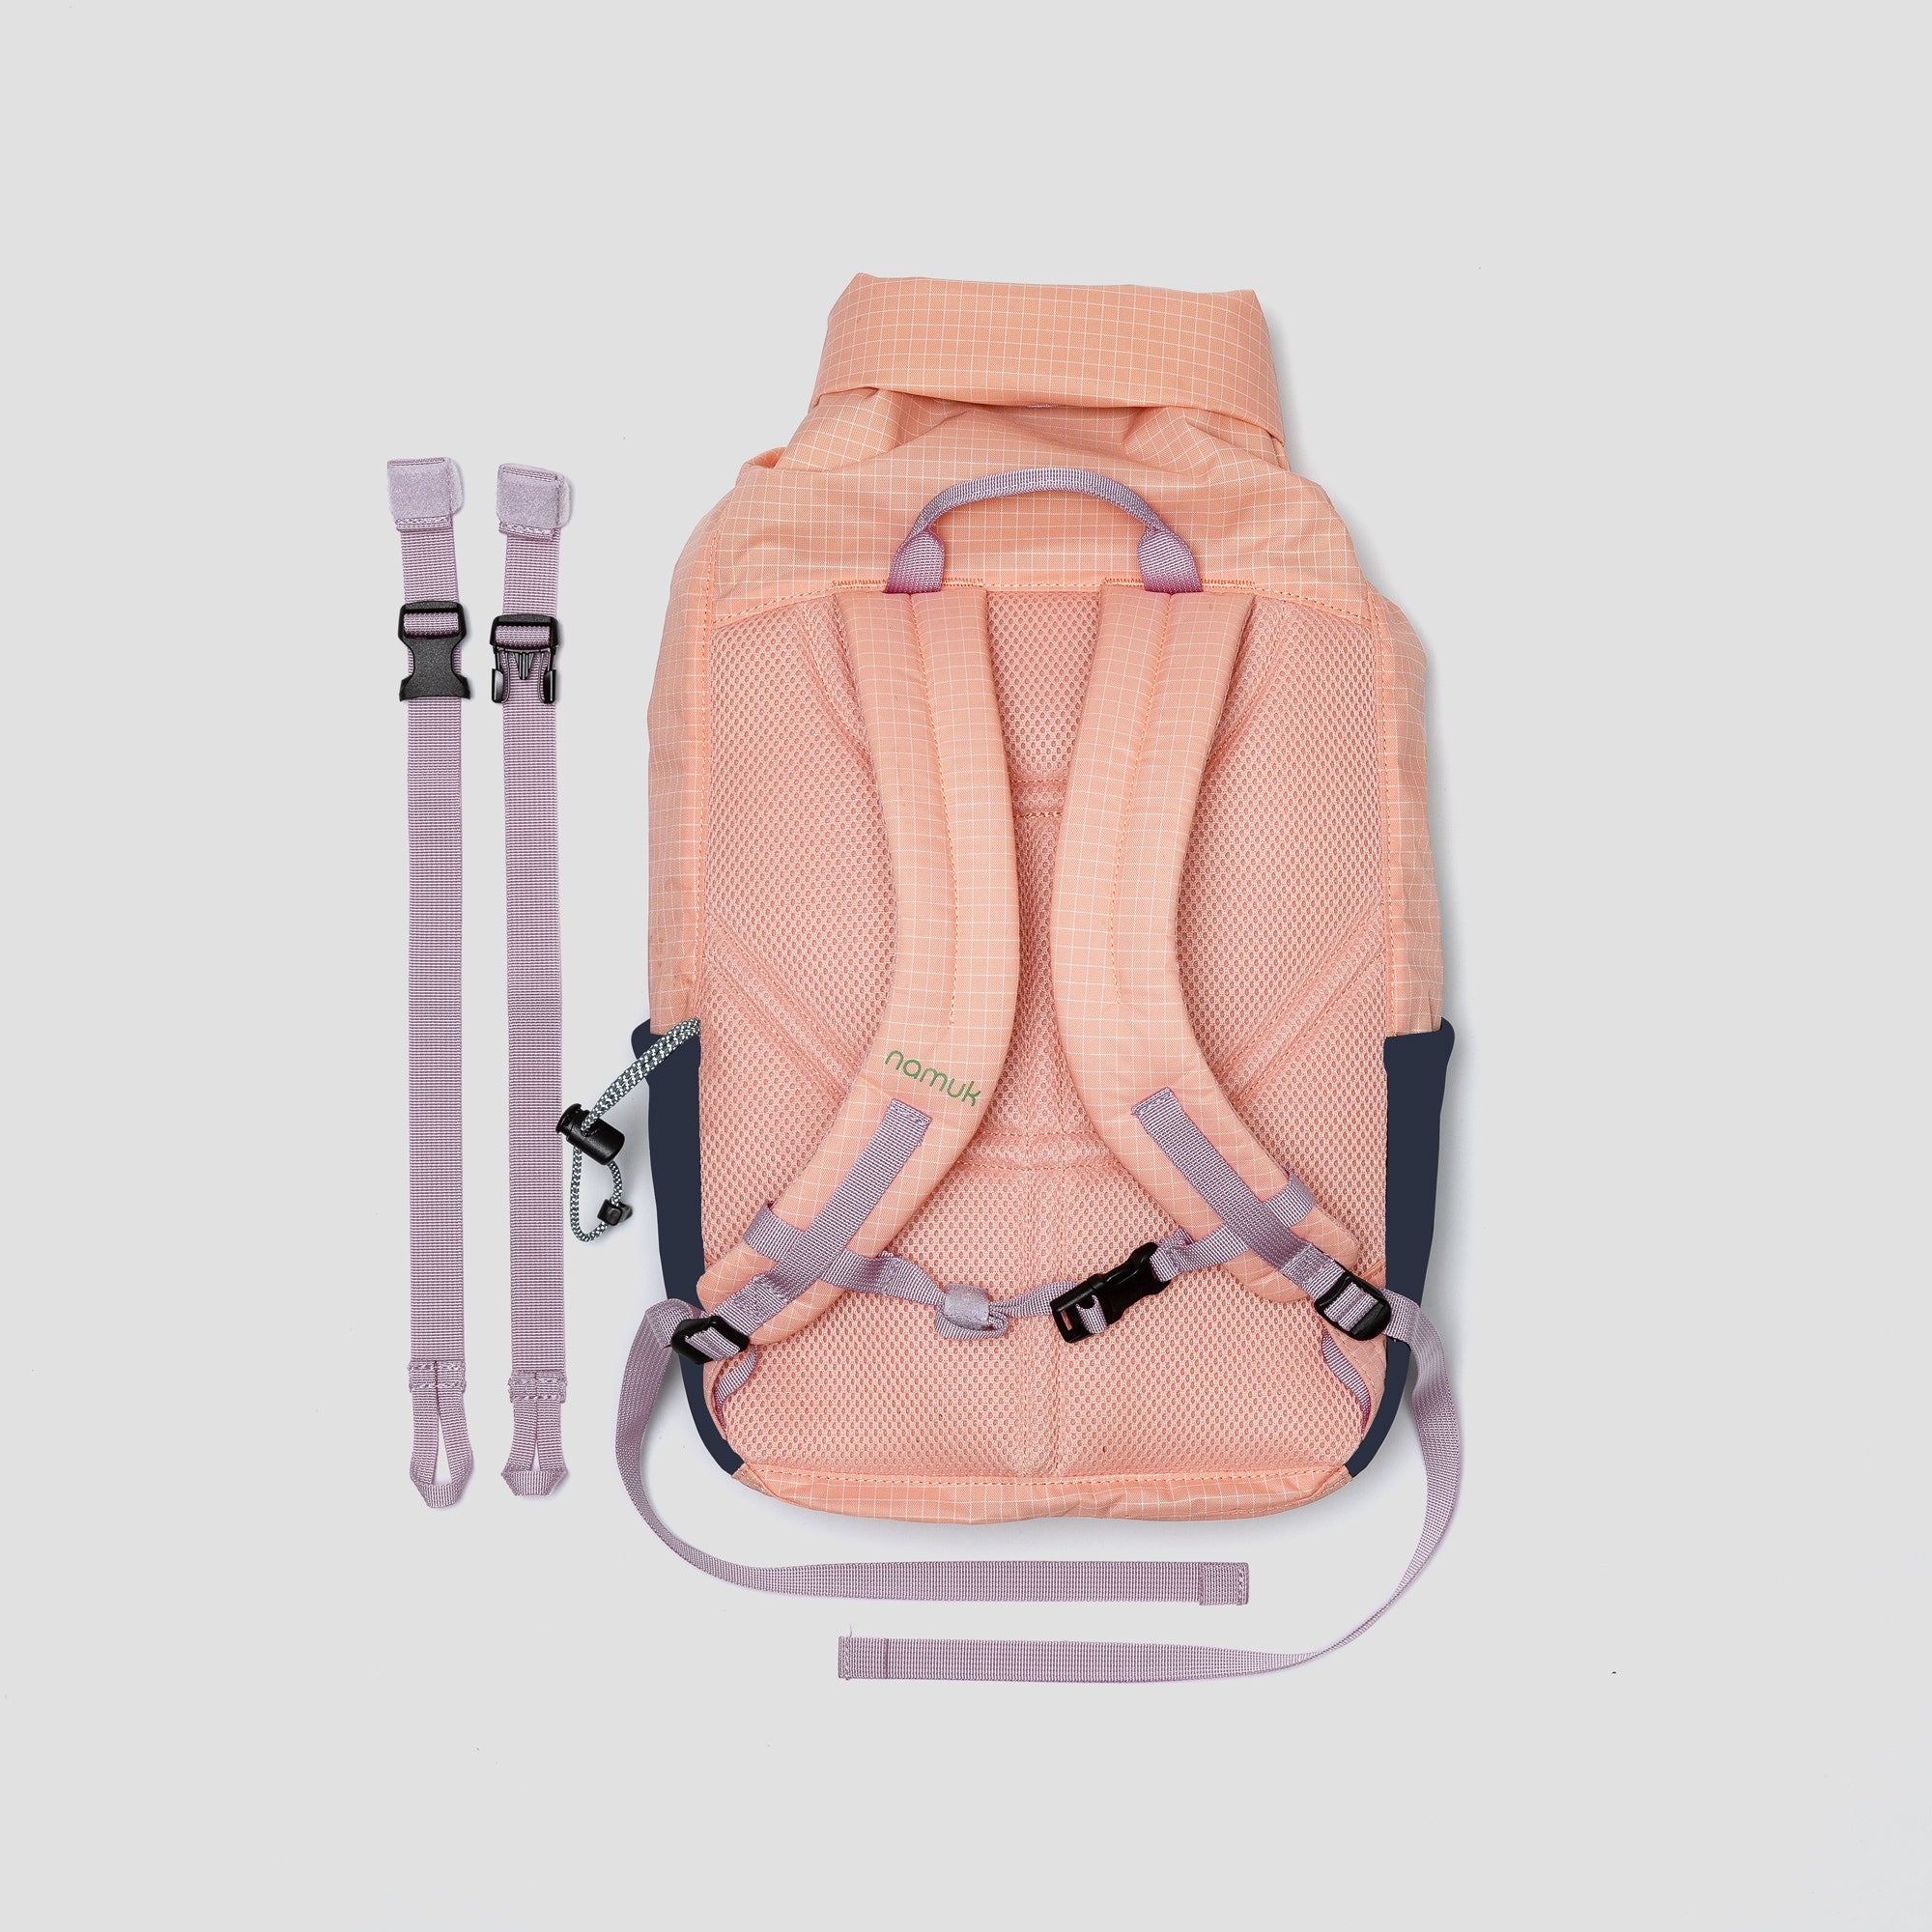 Kids backpack, Eon 14L, sunsetrose